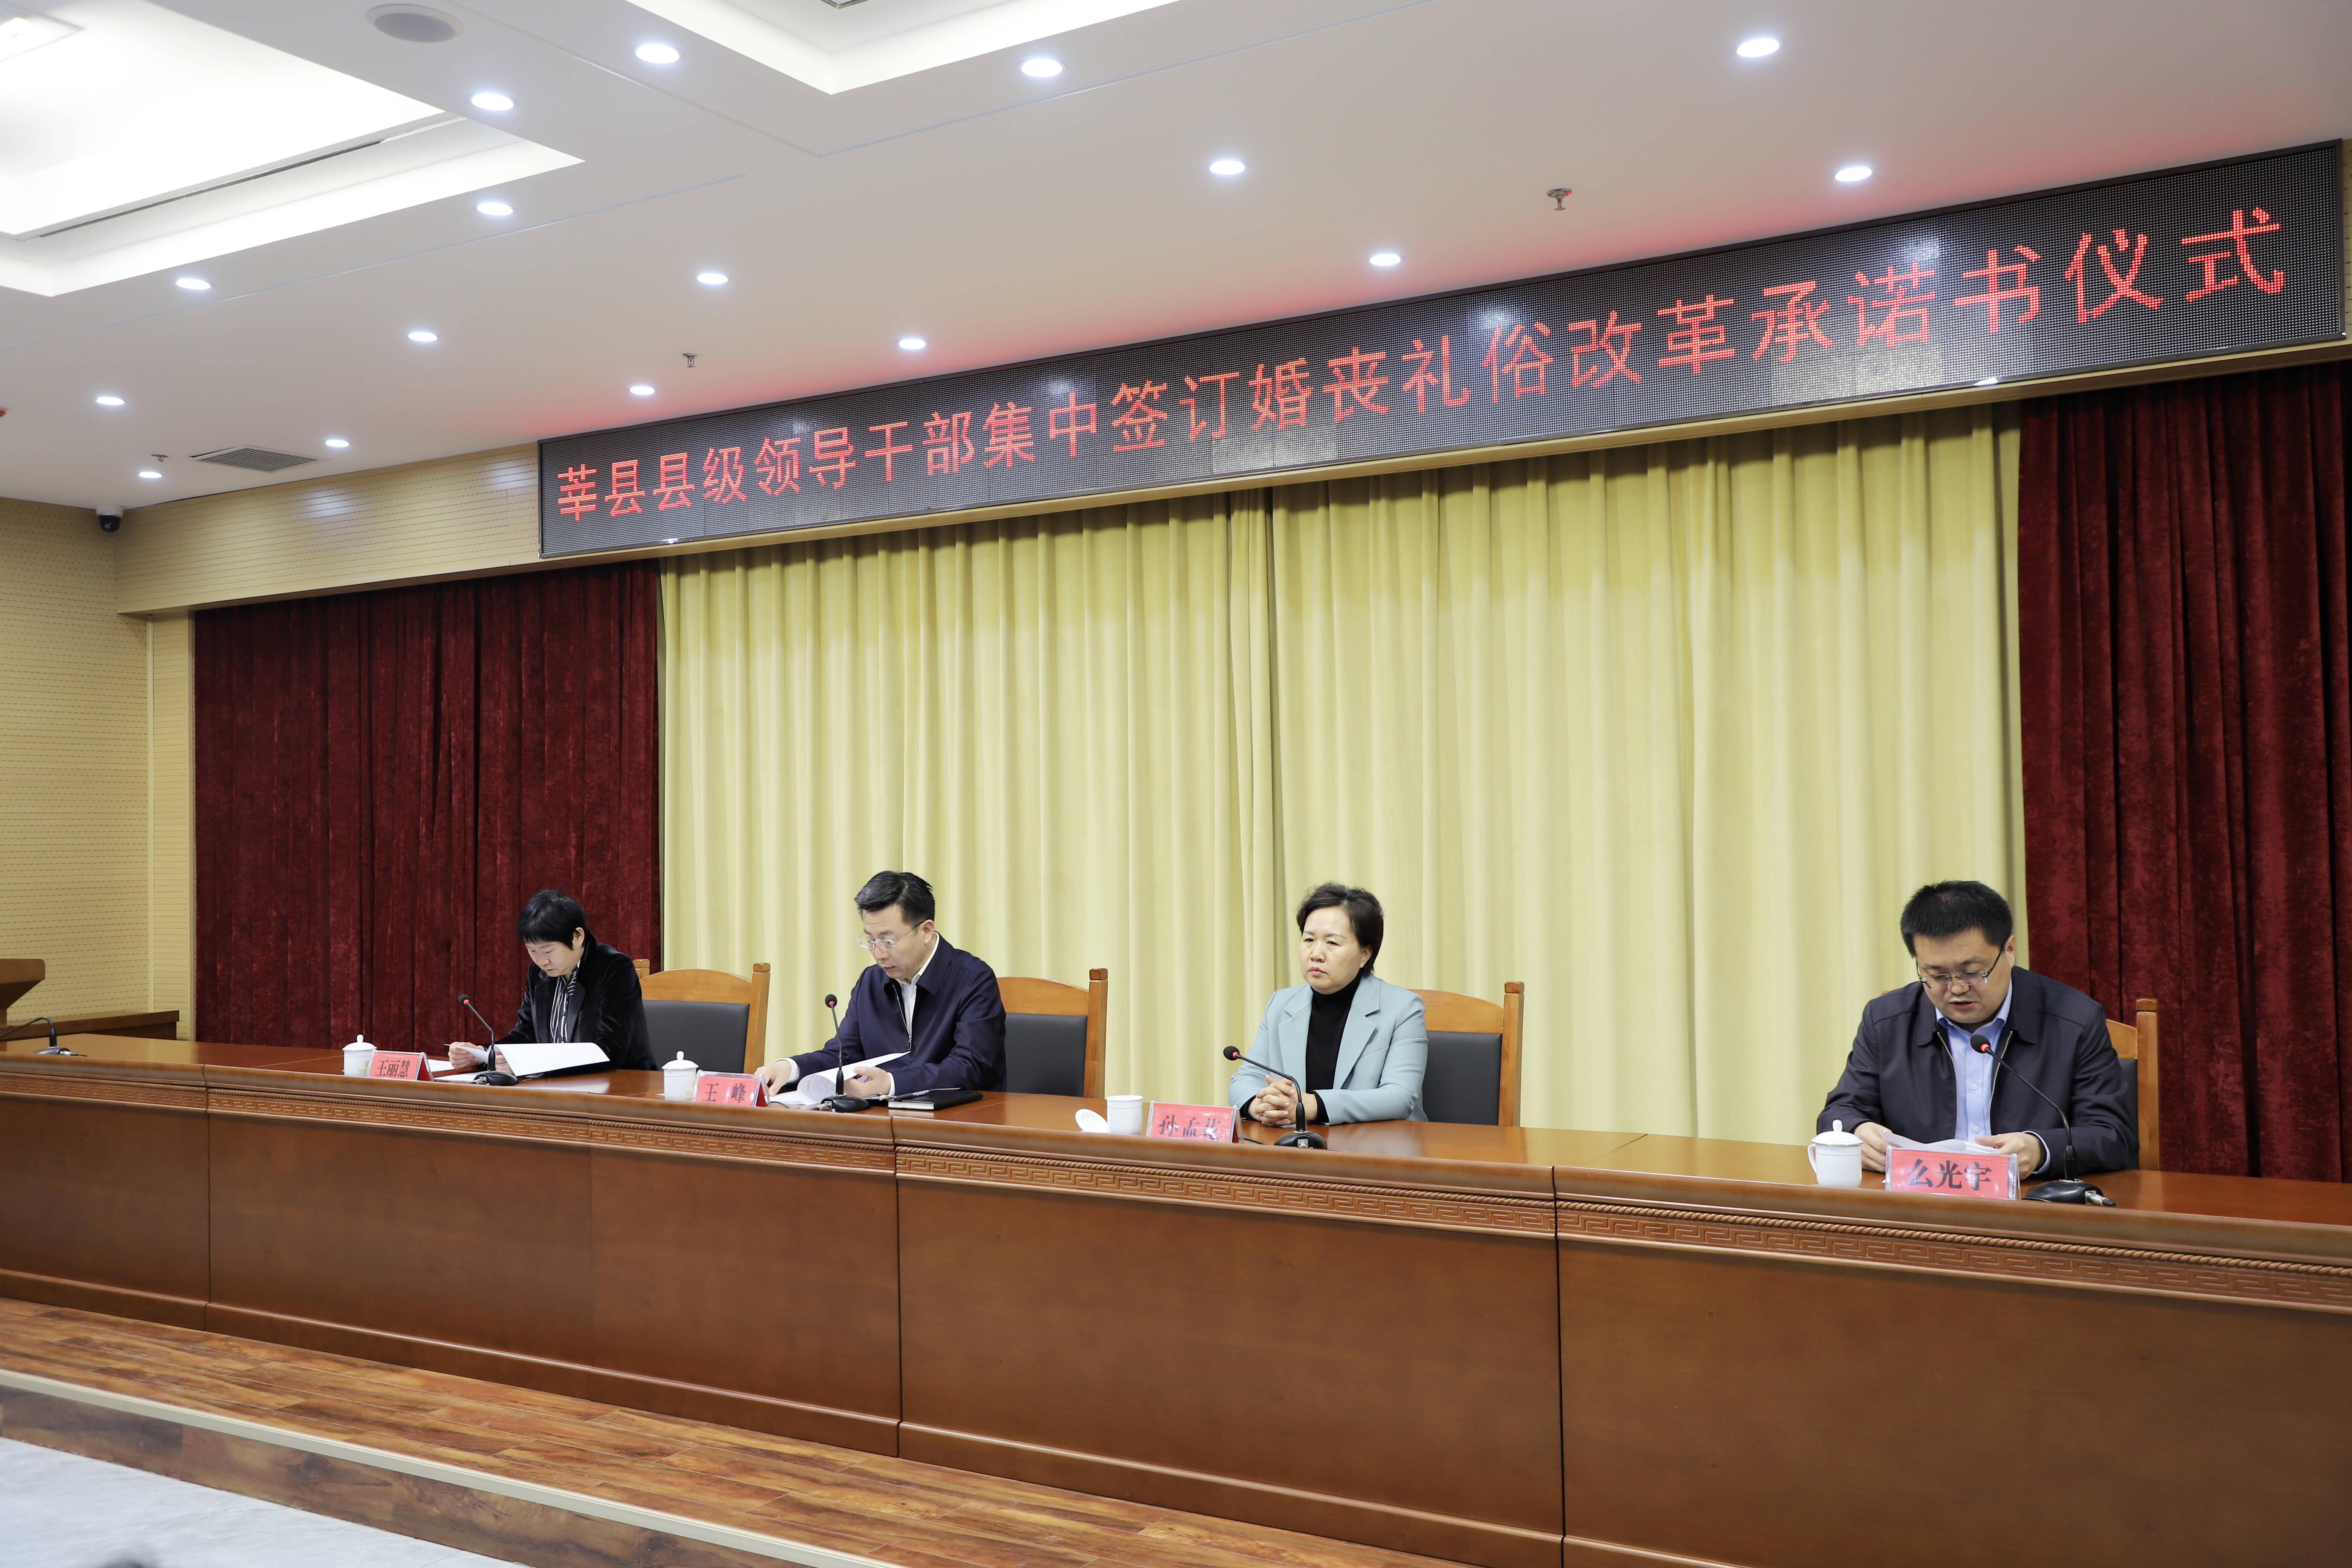 莘县县级领导干部集中签订婚丧礼俗改革承诺书仪式举行